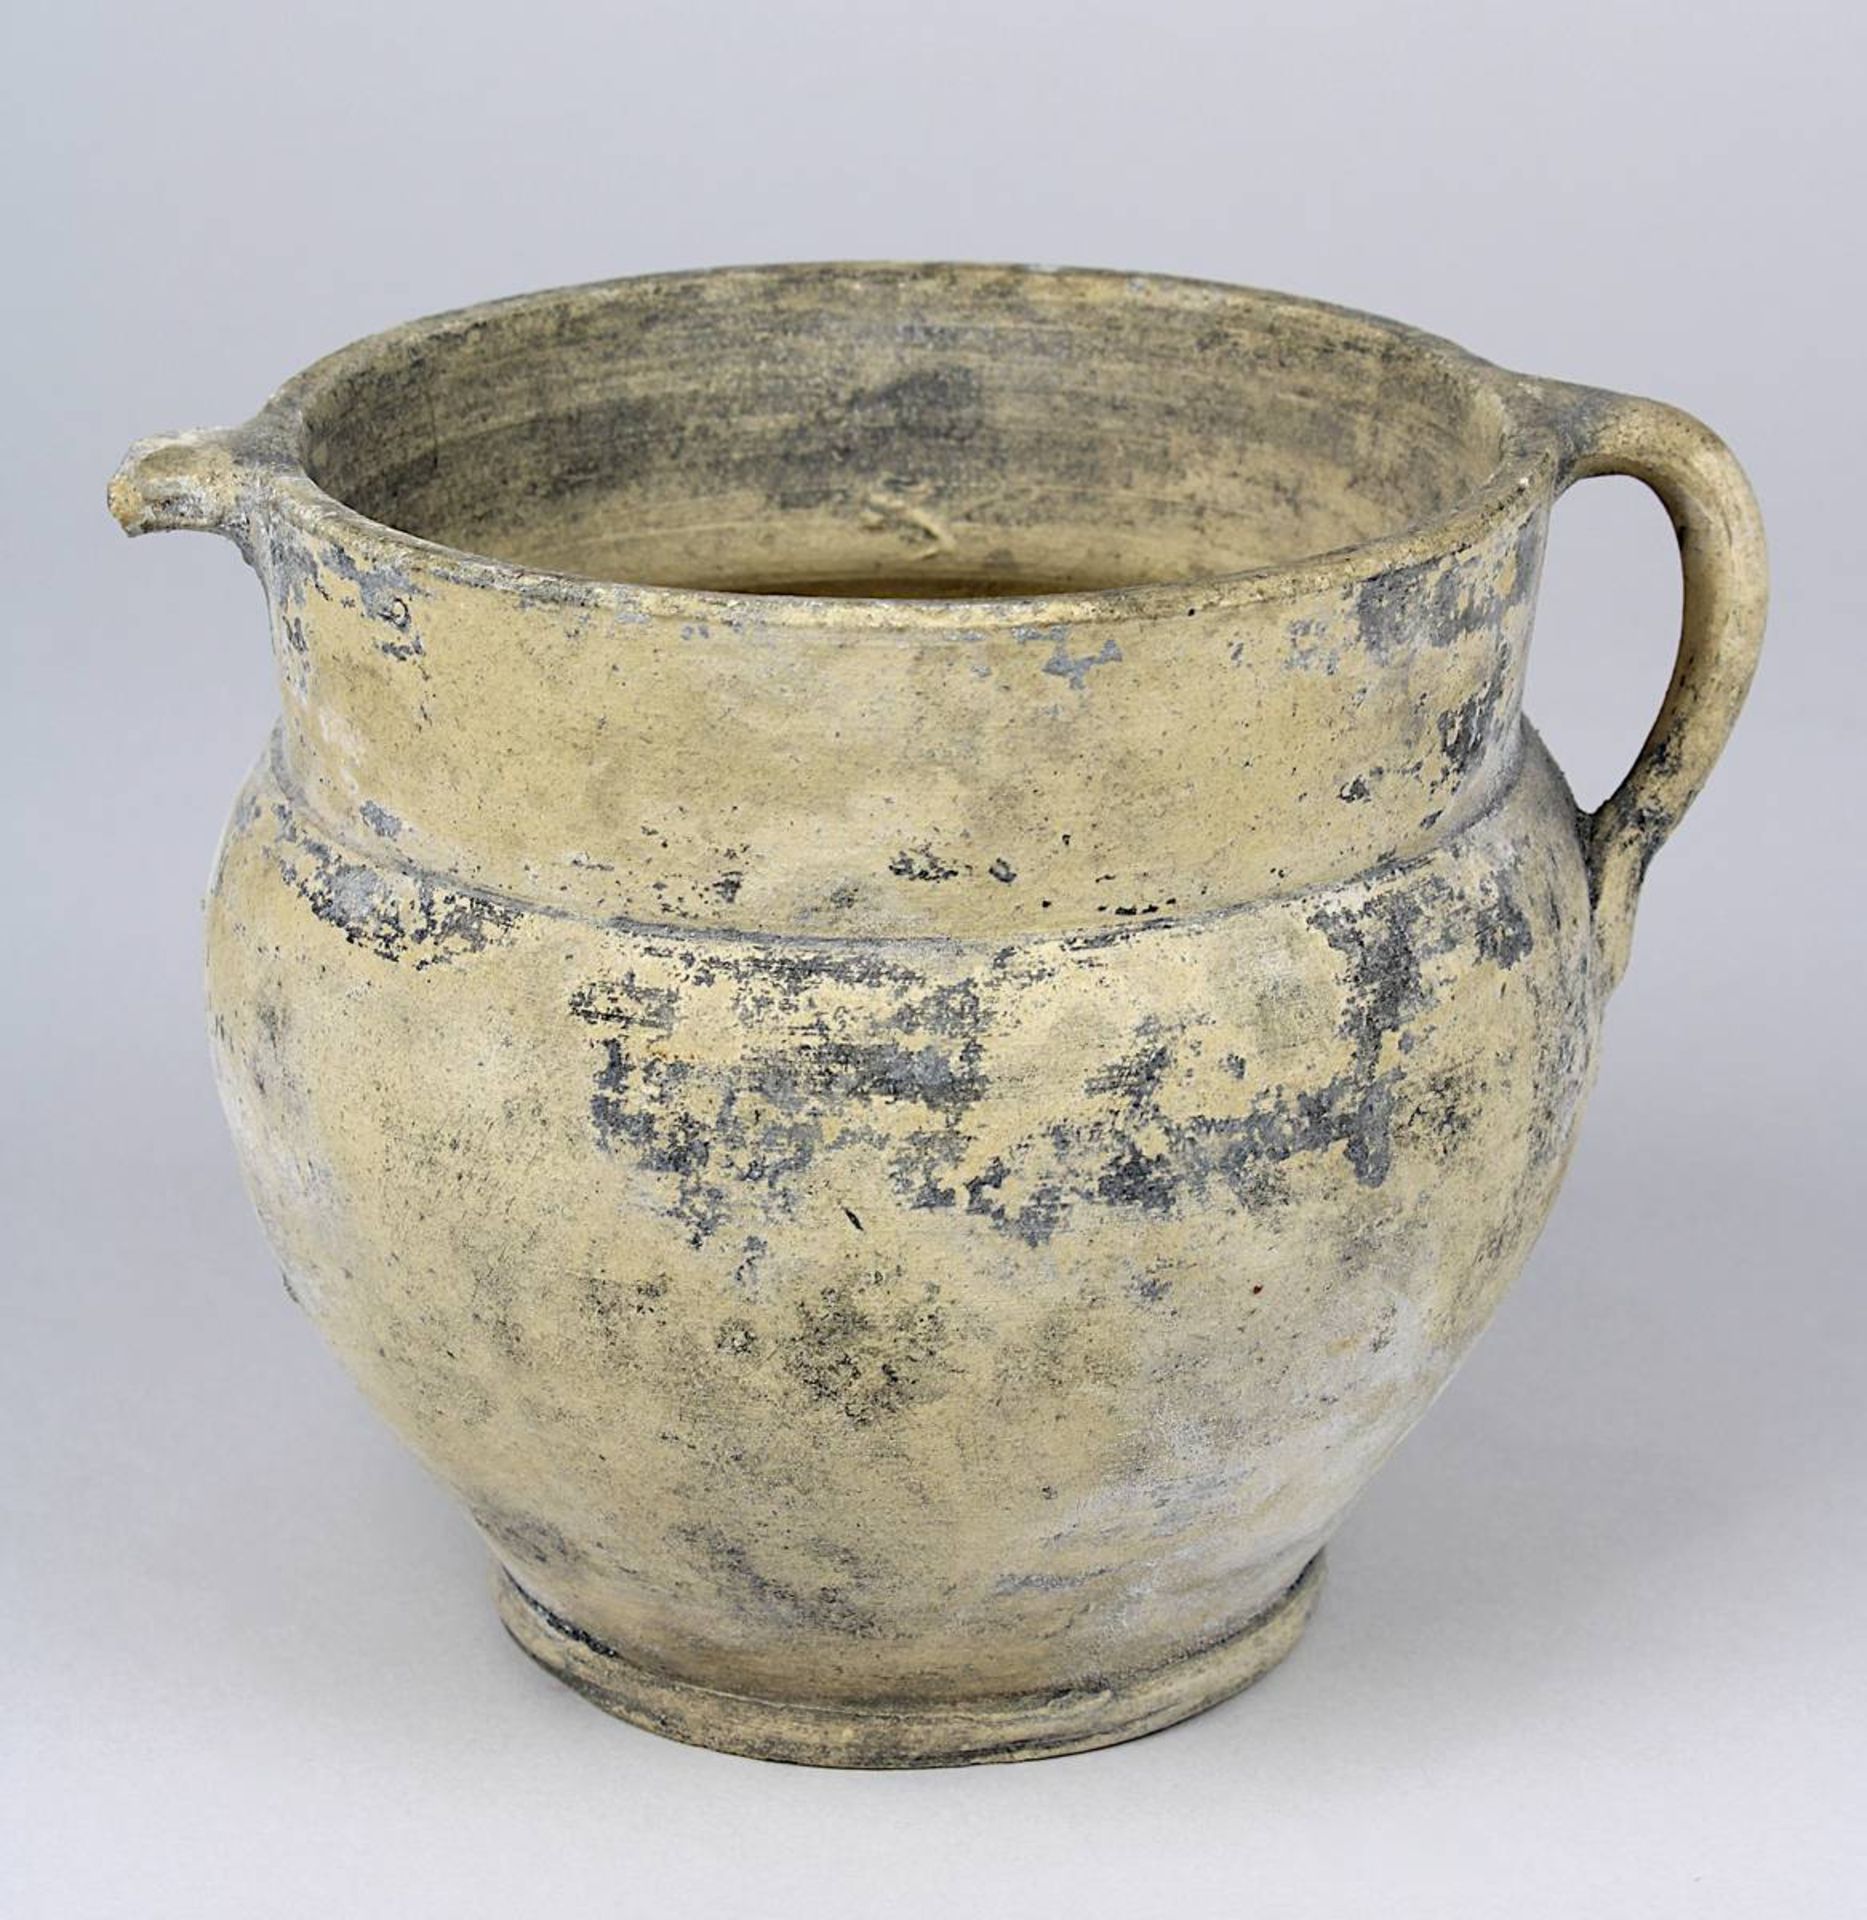 Keramik-Henkeltopf, römisch / provinzialrömisch, auf der Töpferscheibe gedreht, heller Scherben, H